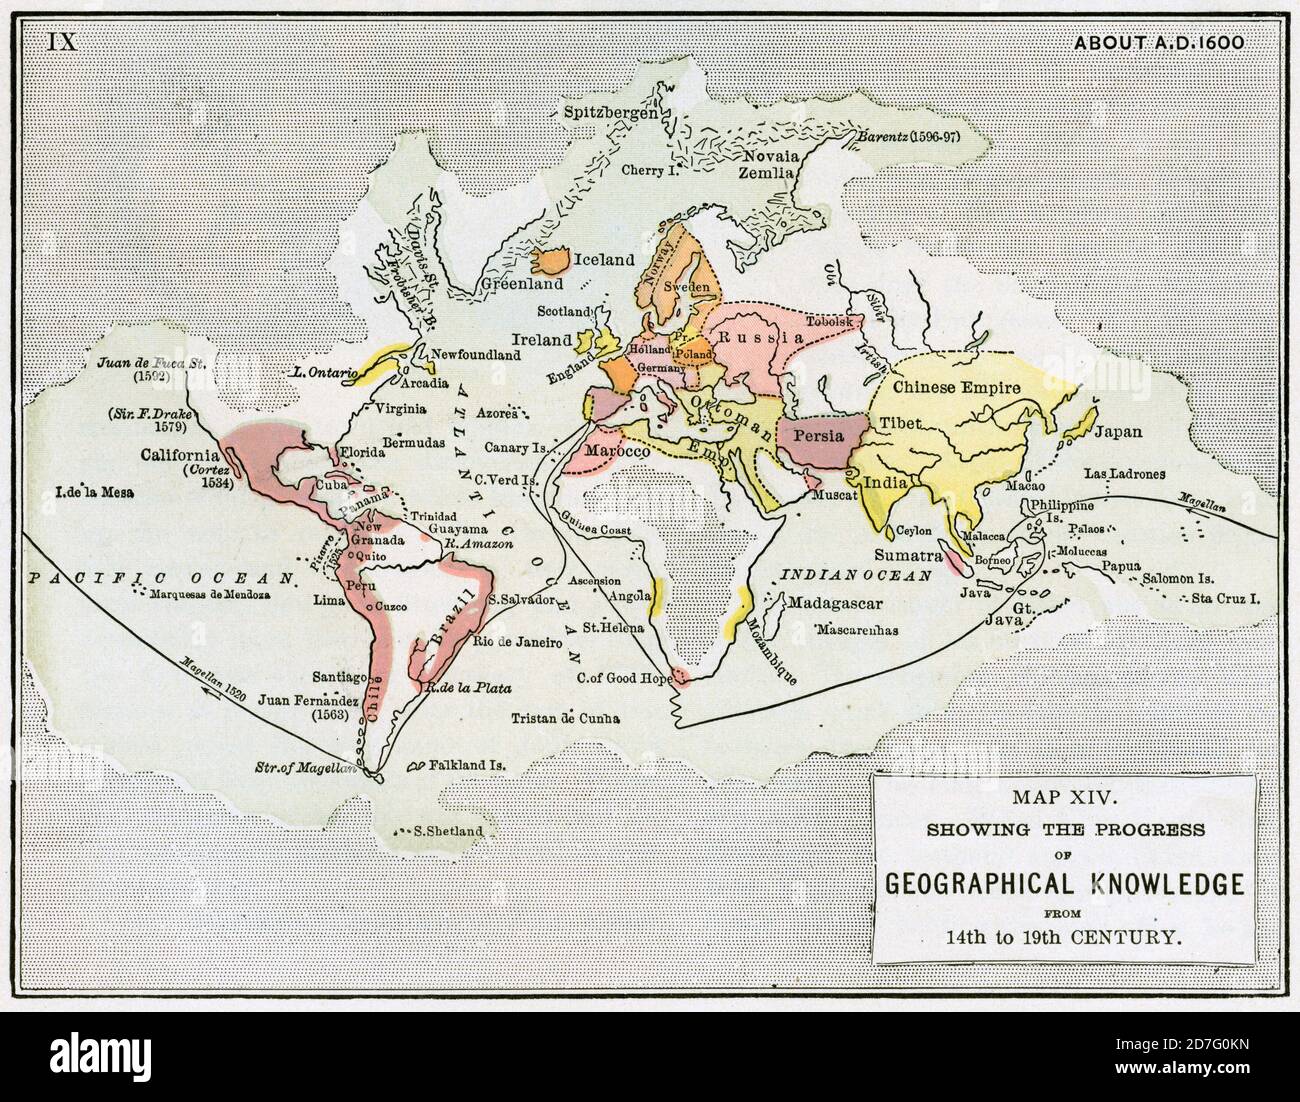 Mappa XIV che mostra i progressi della conoscenza geografica dal XIV al XIX secolo, Illustrazione, Storia del mondo di Ridpath, Volume III, di John Clark Ridpath, LL. D., Merrill & Baker Publishers, New York, 1897 Foto Stock